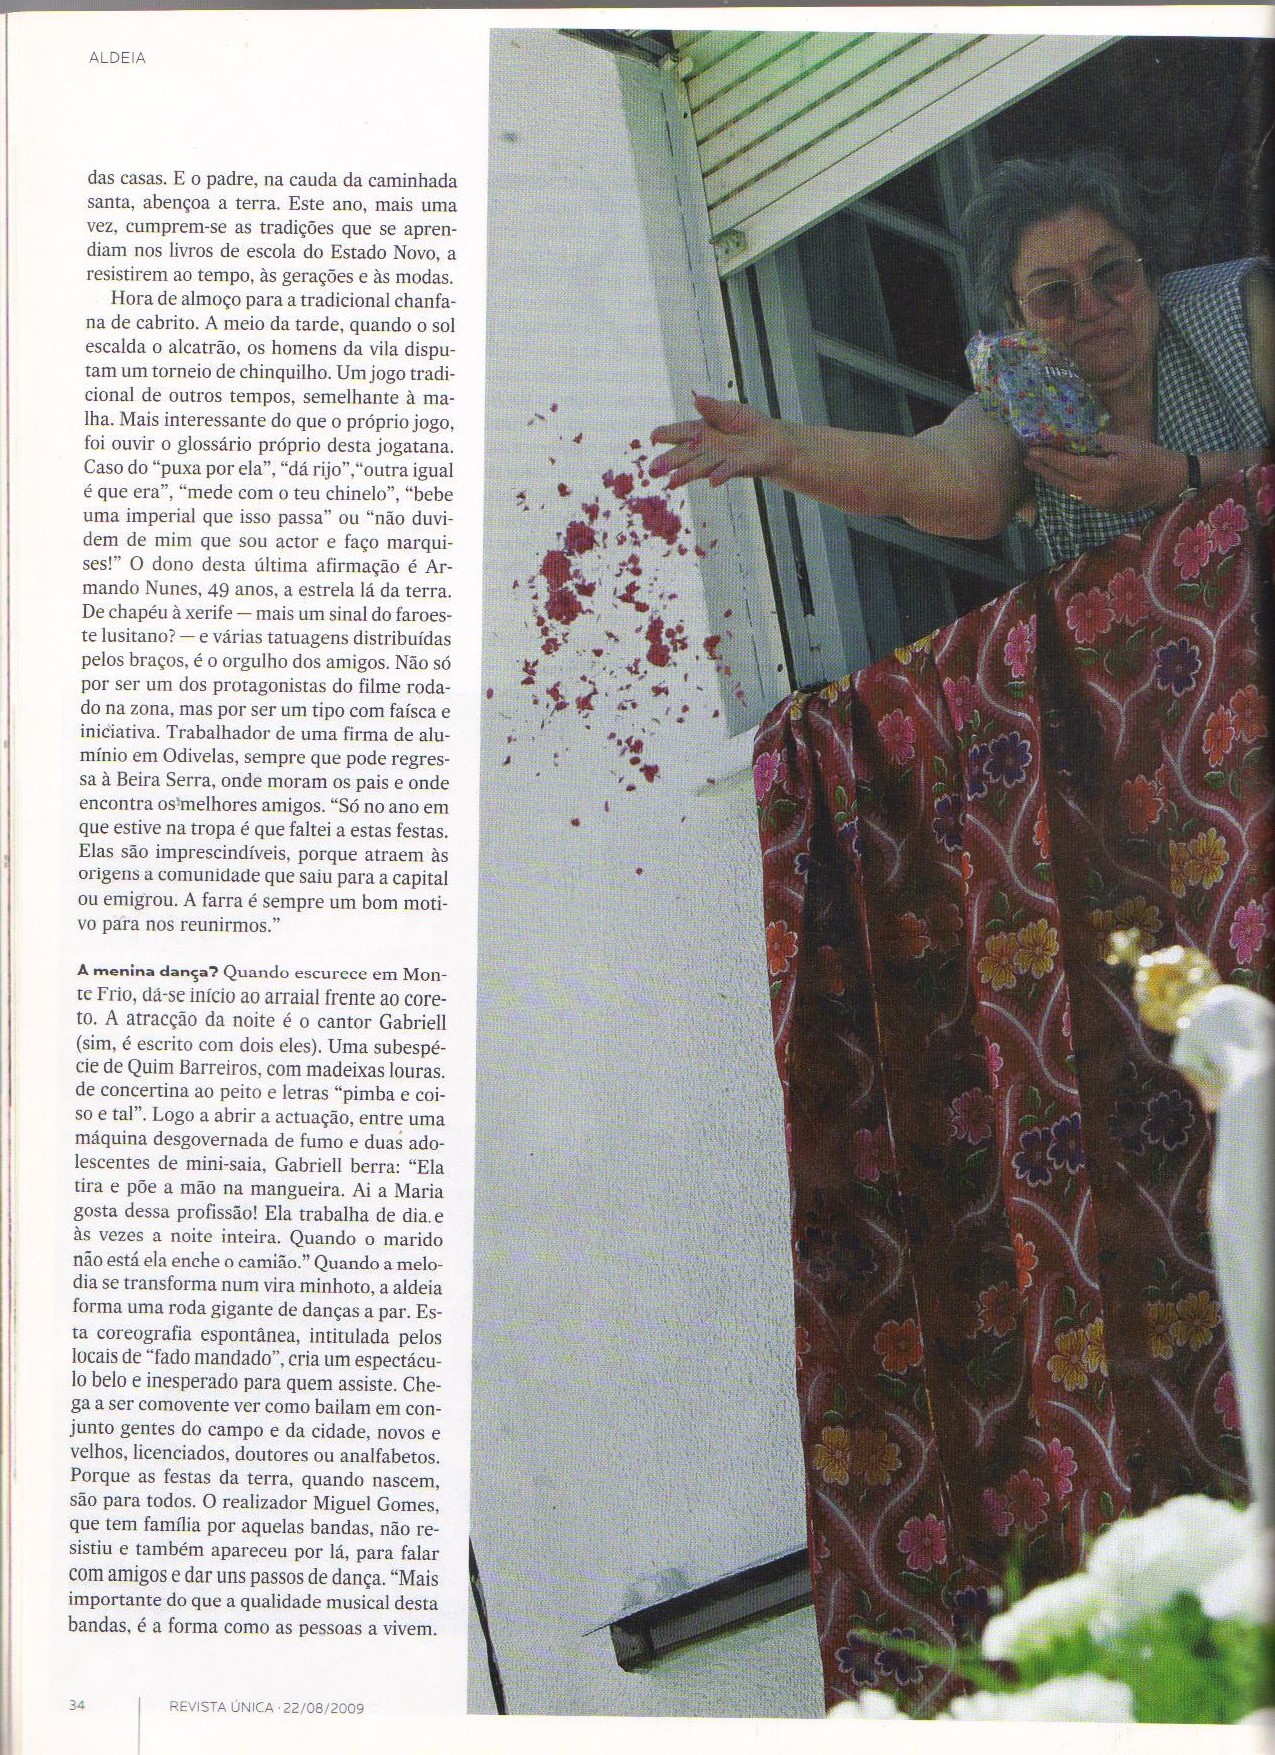 JORNAL EXPRESSO, 22 de Agosto de 2009 - N.º 1.921, Revista Única, pág. 34 - 'FESTA - ALDEIA - As saudades que eu já tinha...'